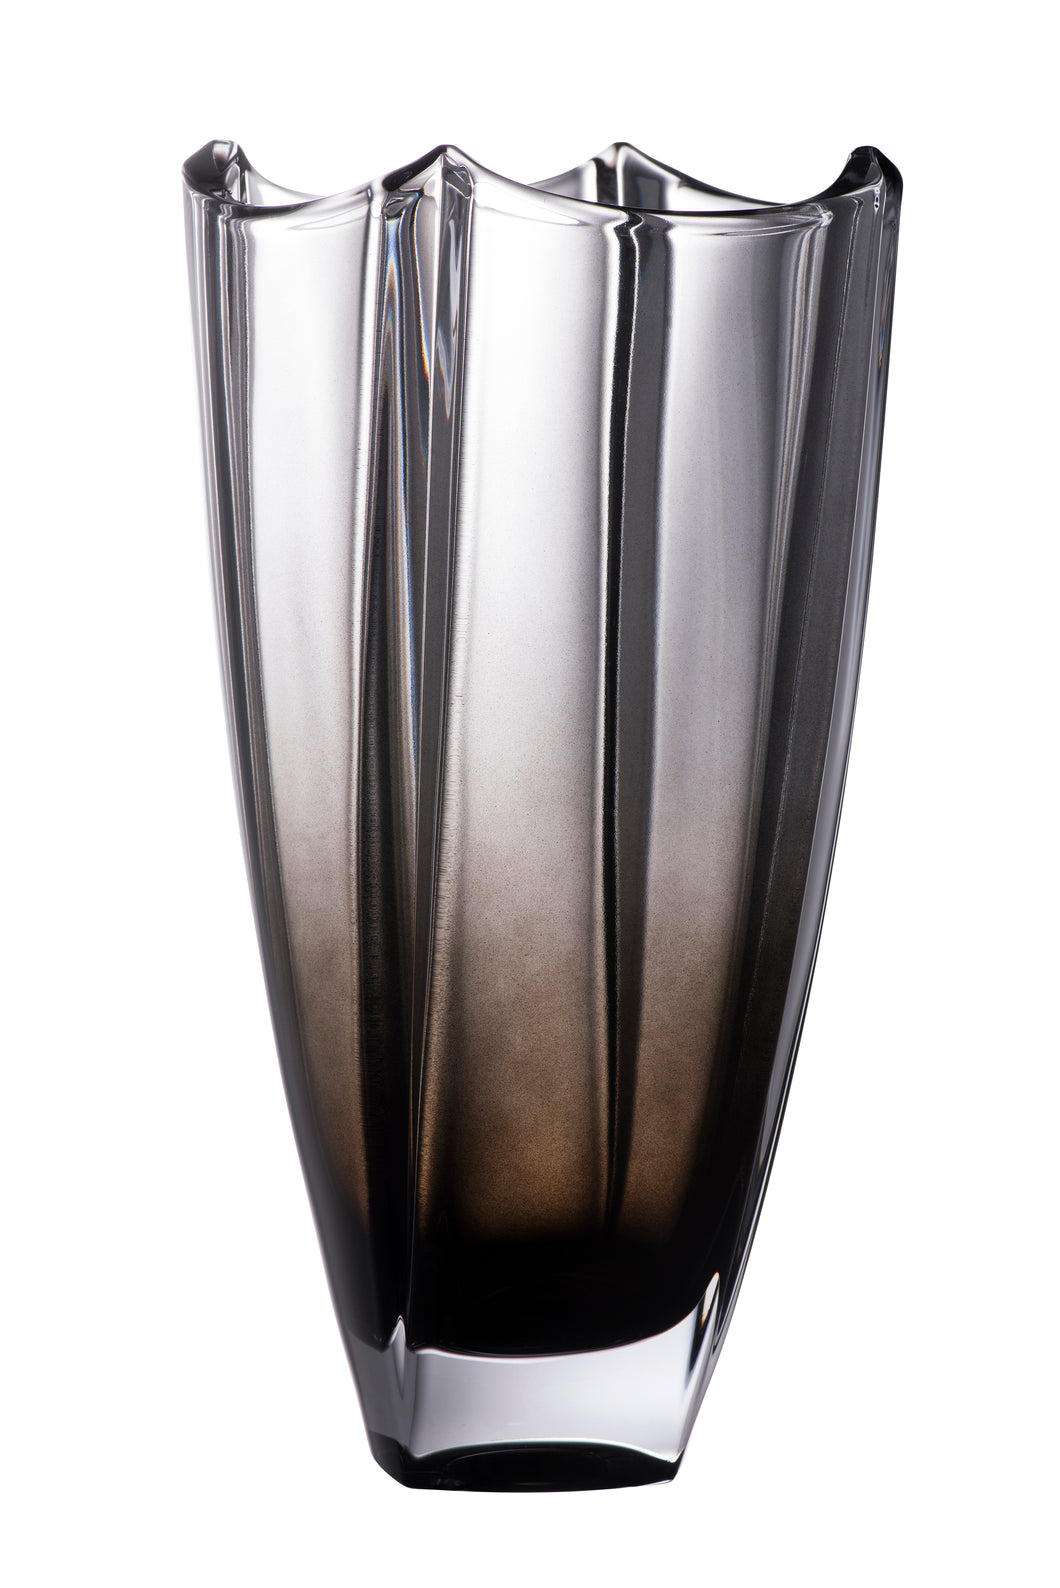 Galway Crystal - Dune 12” Onyx Vase